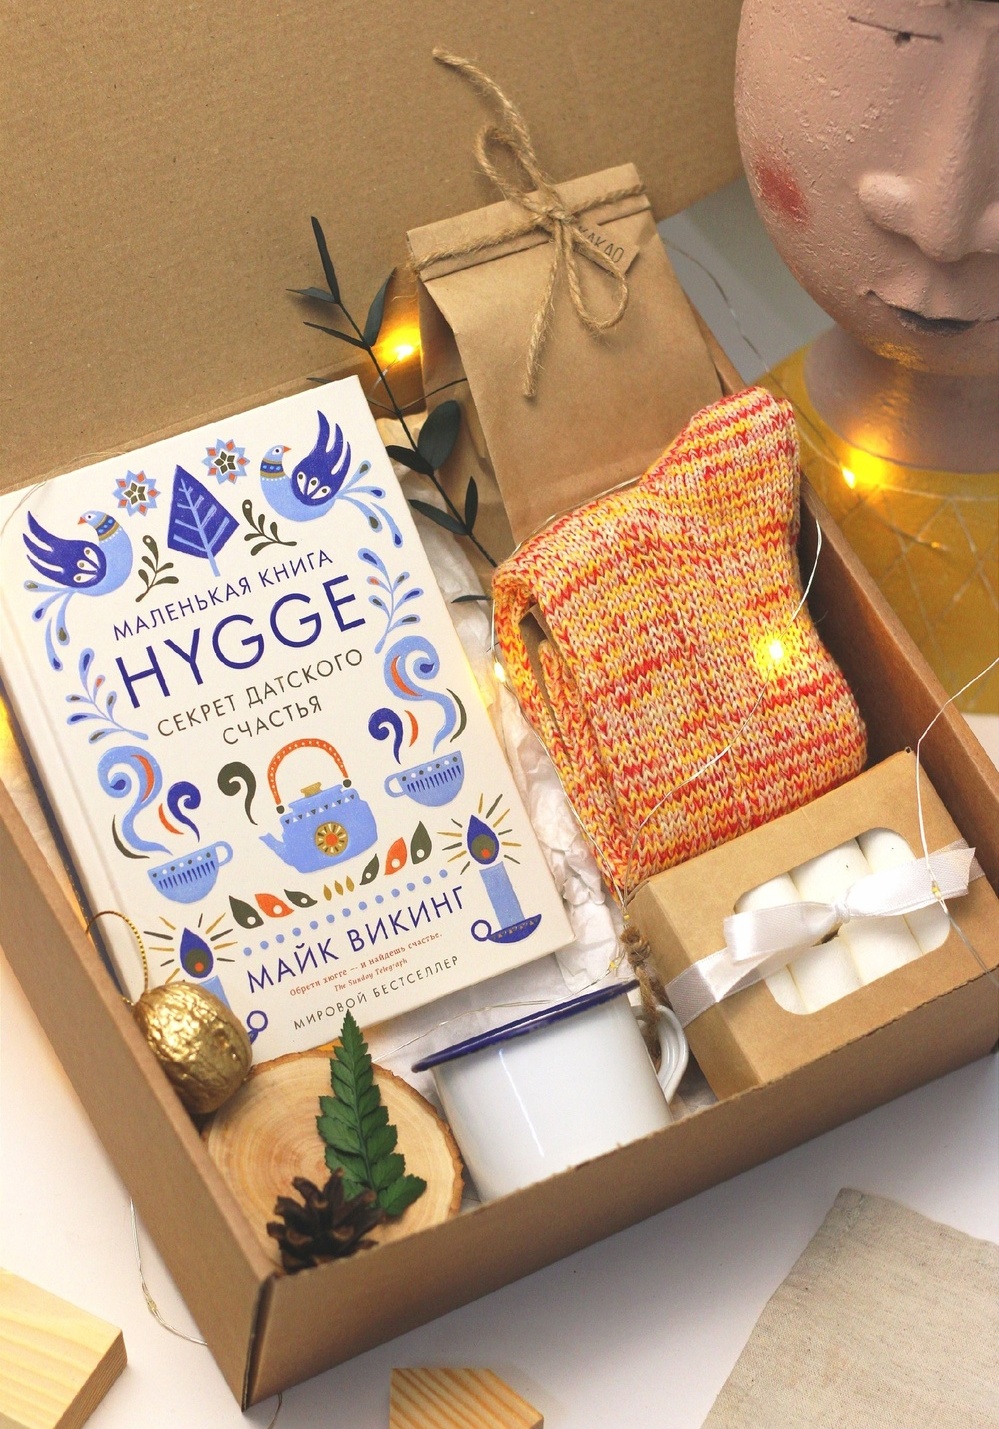 Светящийся подарочный бокс "Hygge" со свечой, книгой, теплыми носками, какао, маршмеллоу и орешком с предсказанием